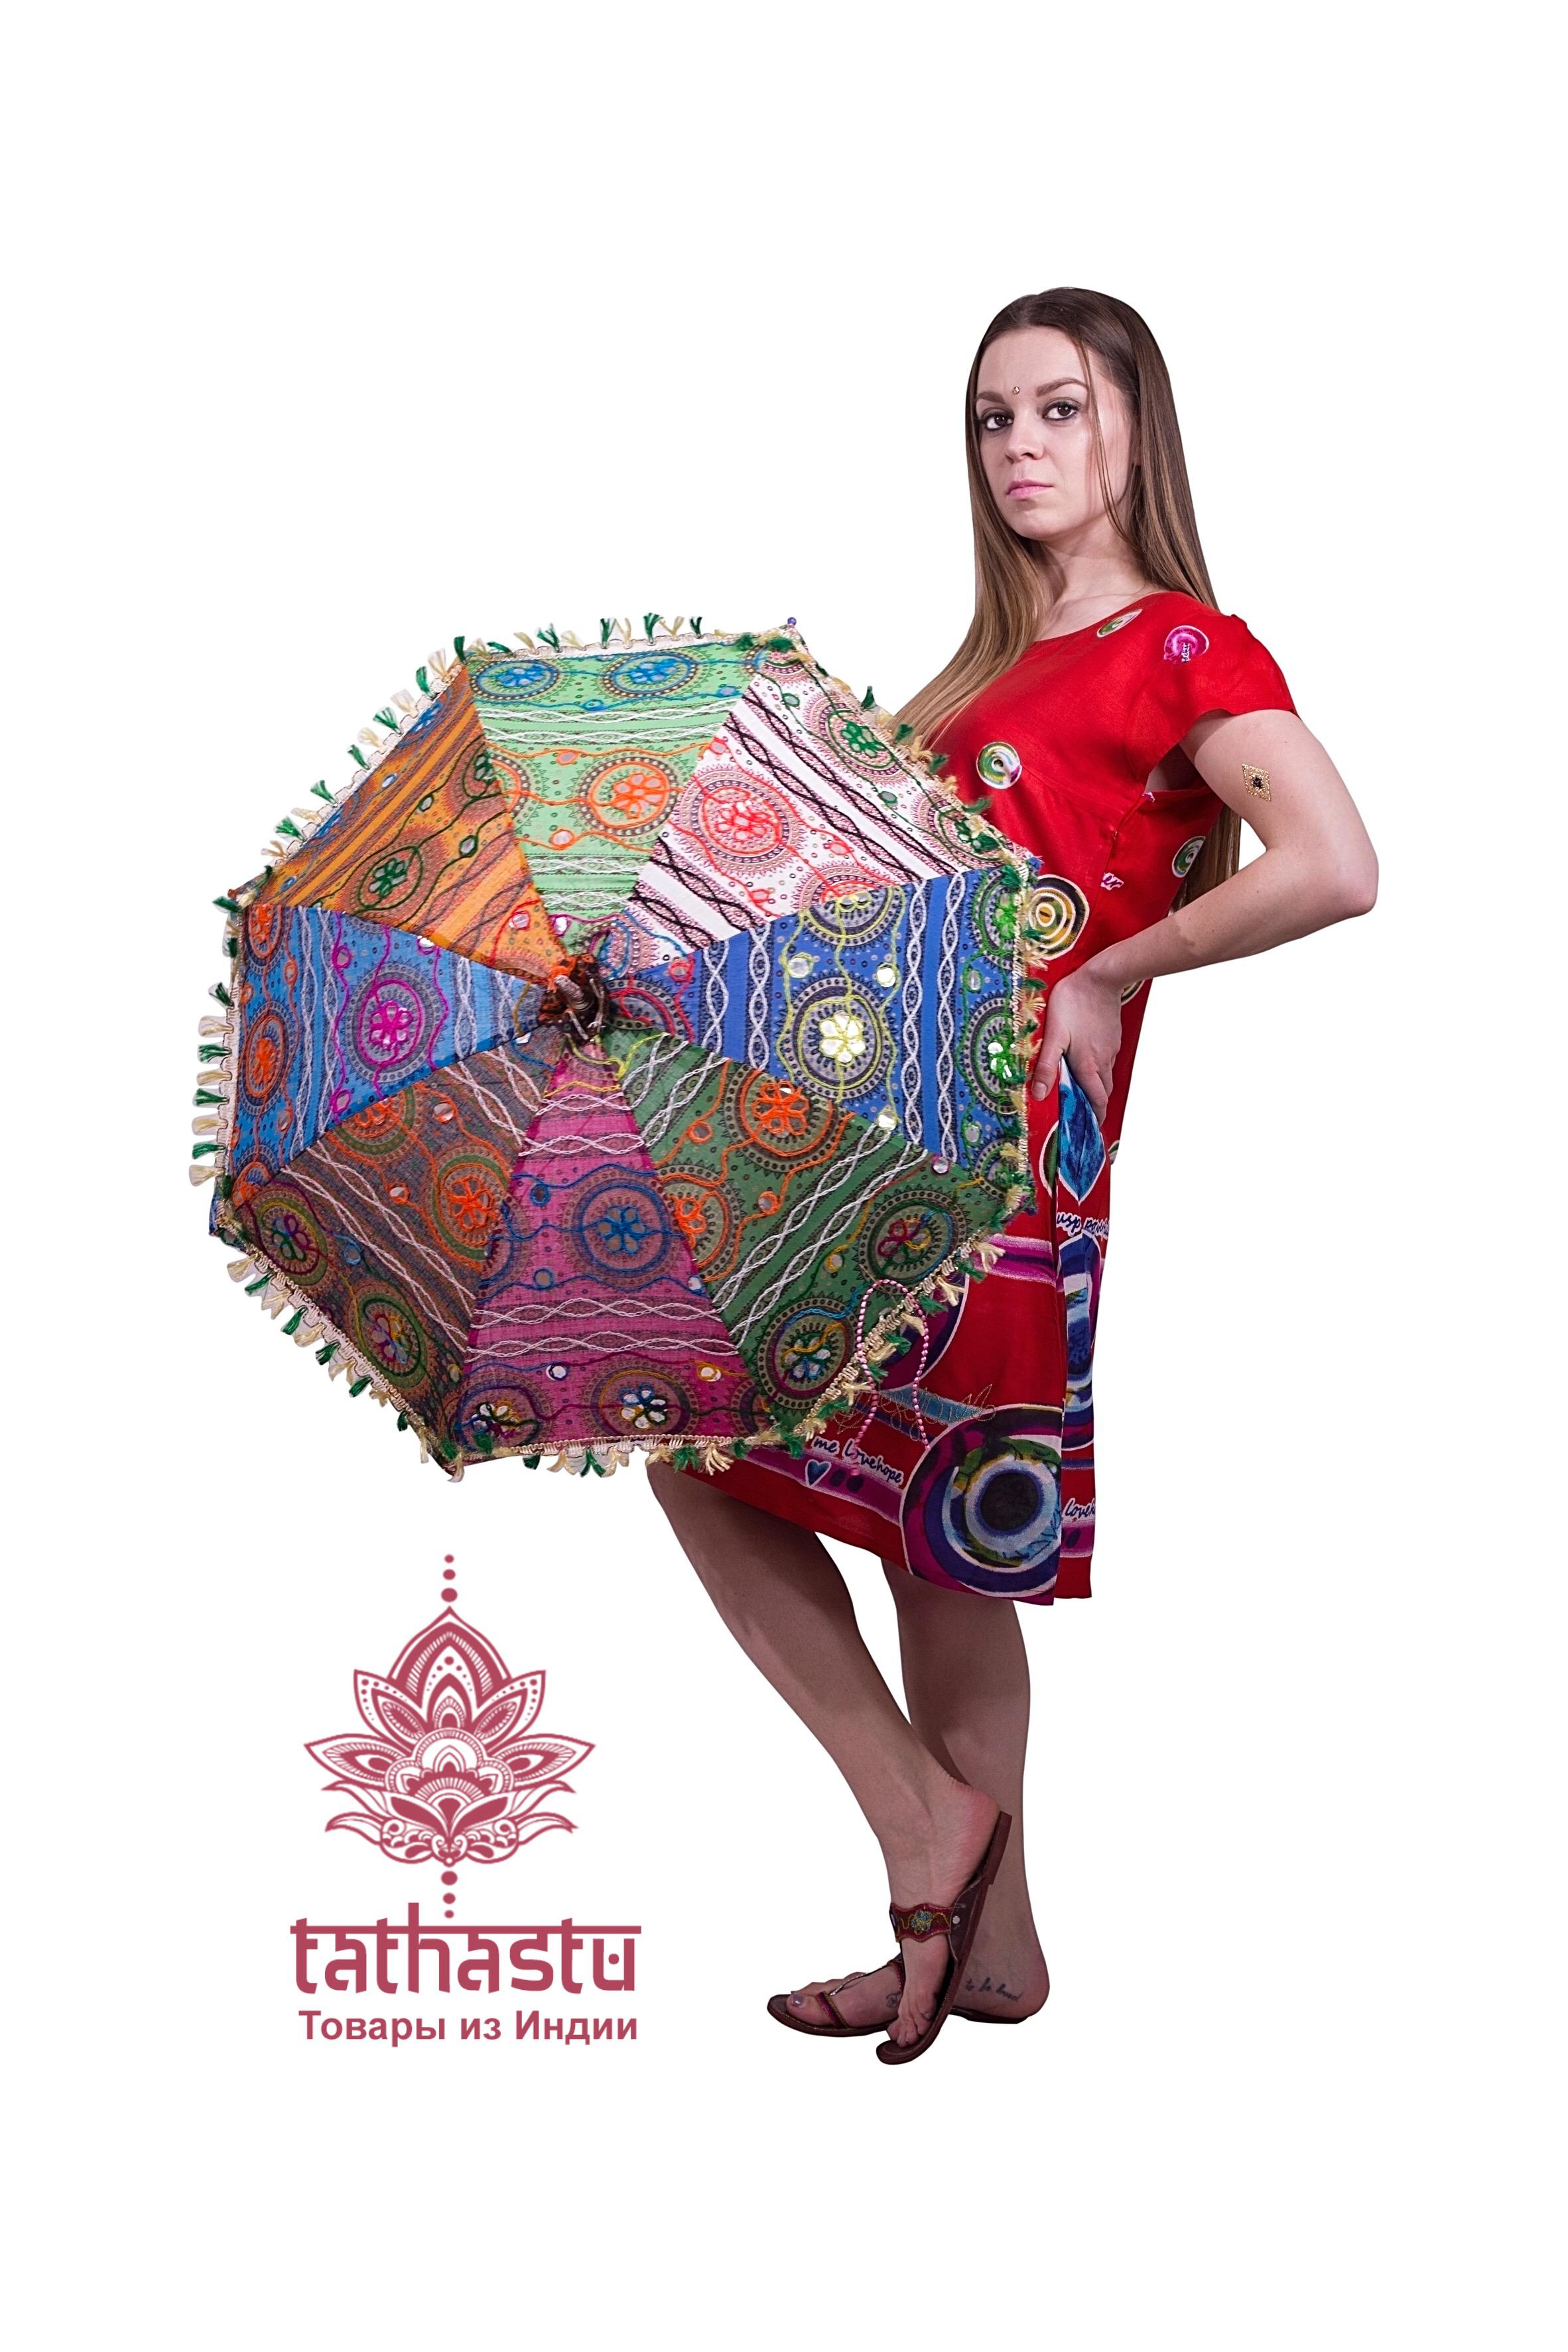 Платье 7. Tathastu товары и индии